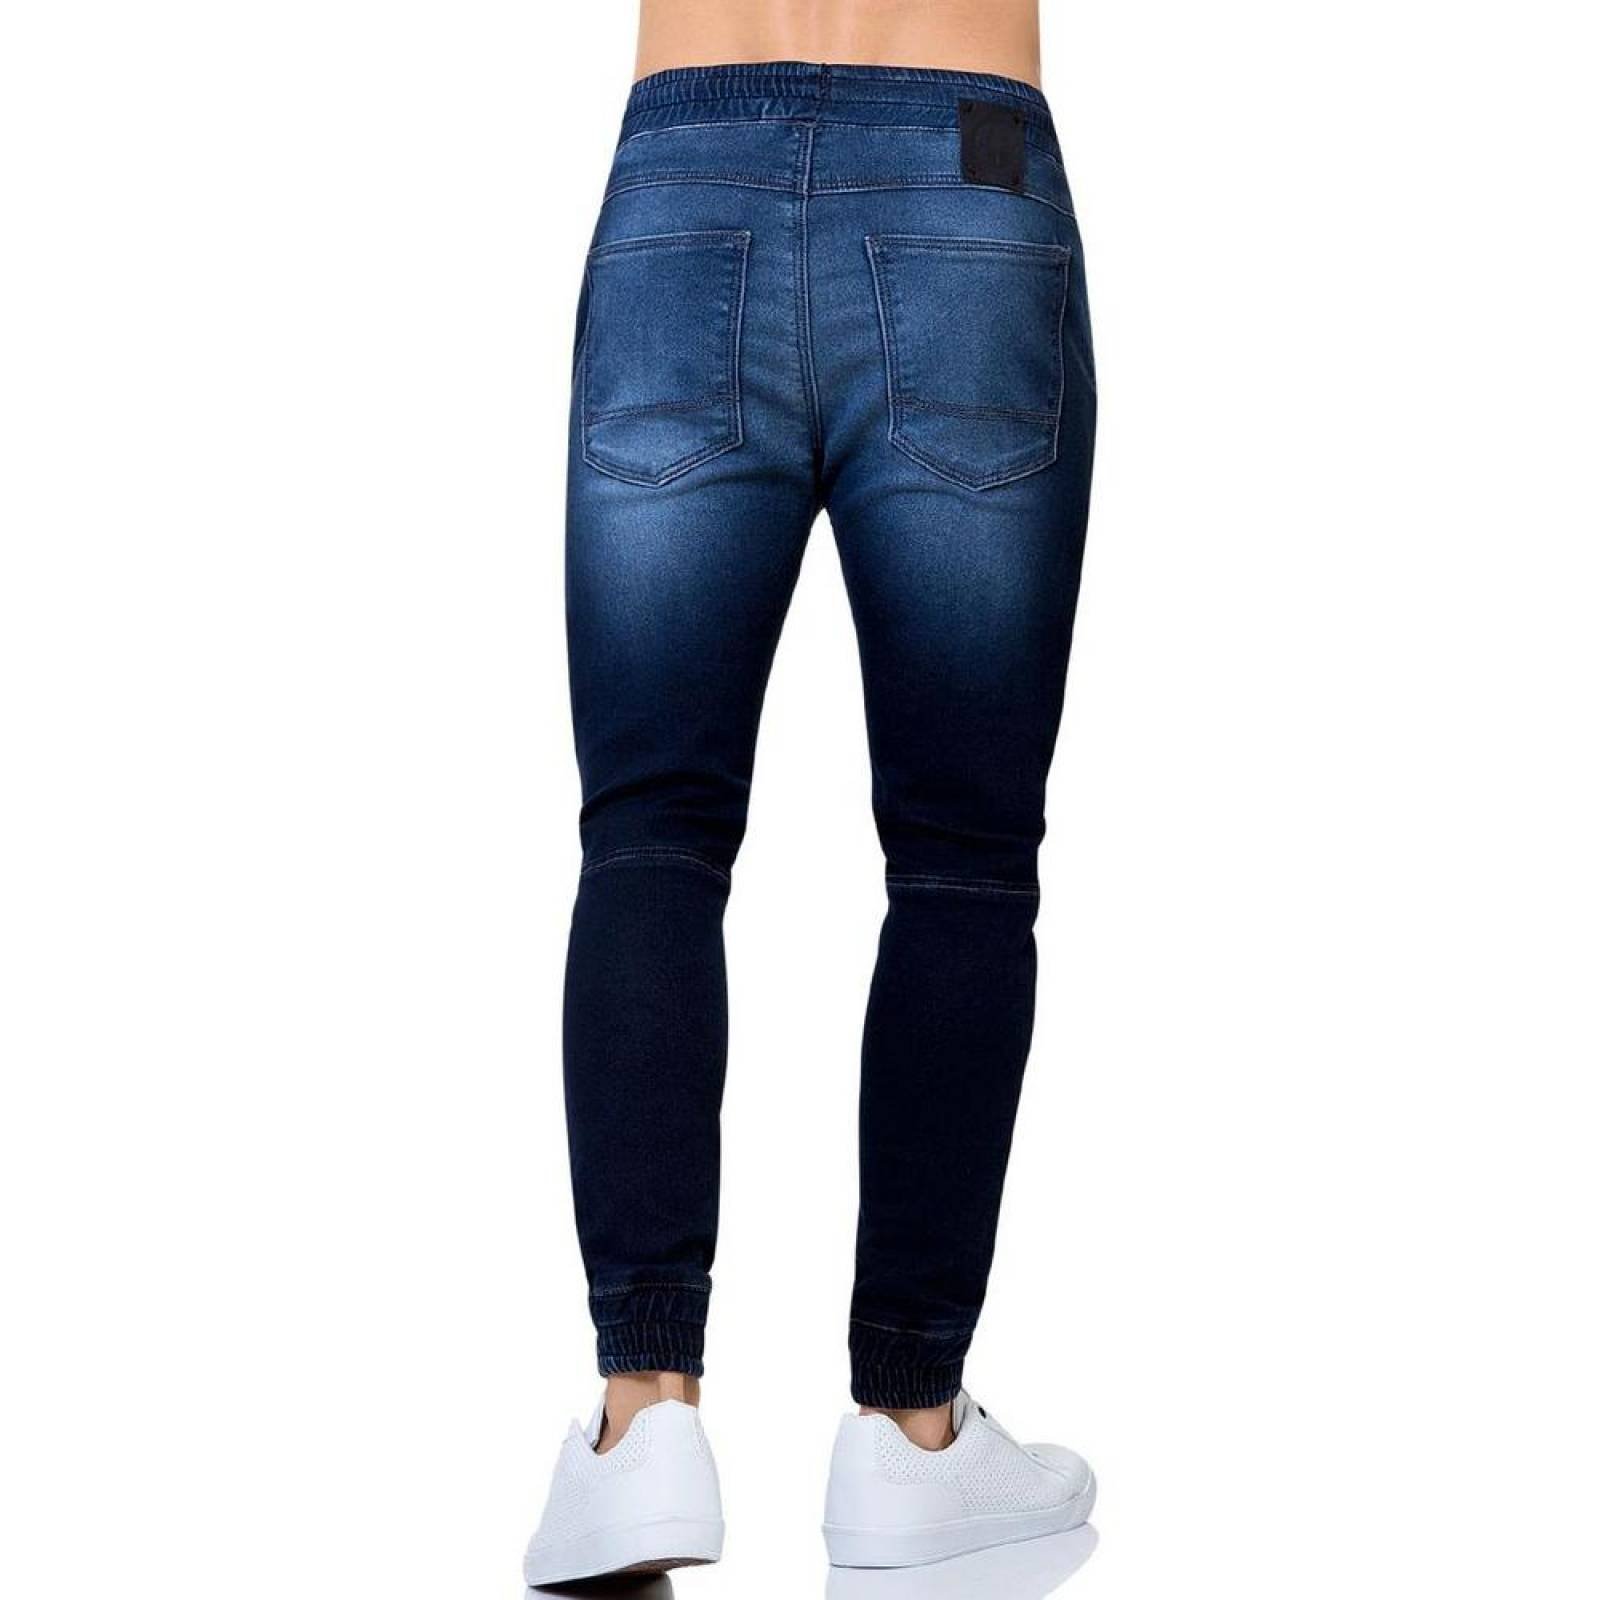 Jeans Moda Hombre Salvaje Tentación Indigo 71803126 Mezclilla Stretch 